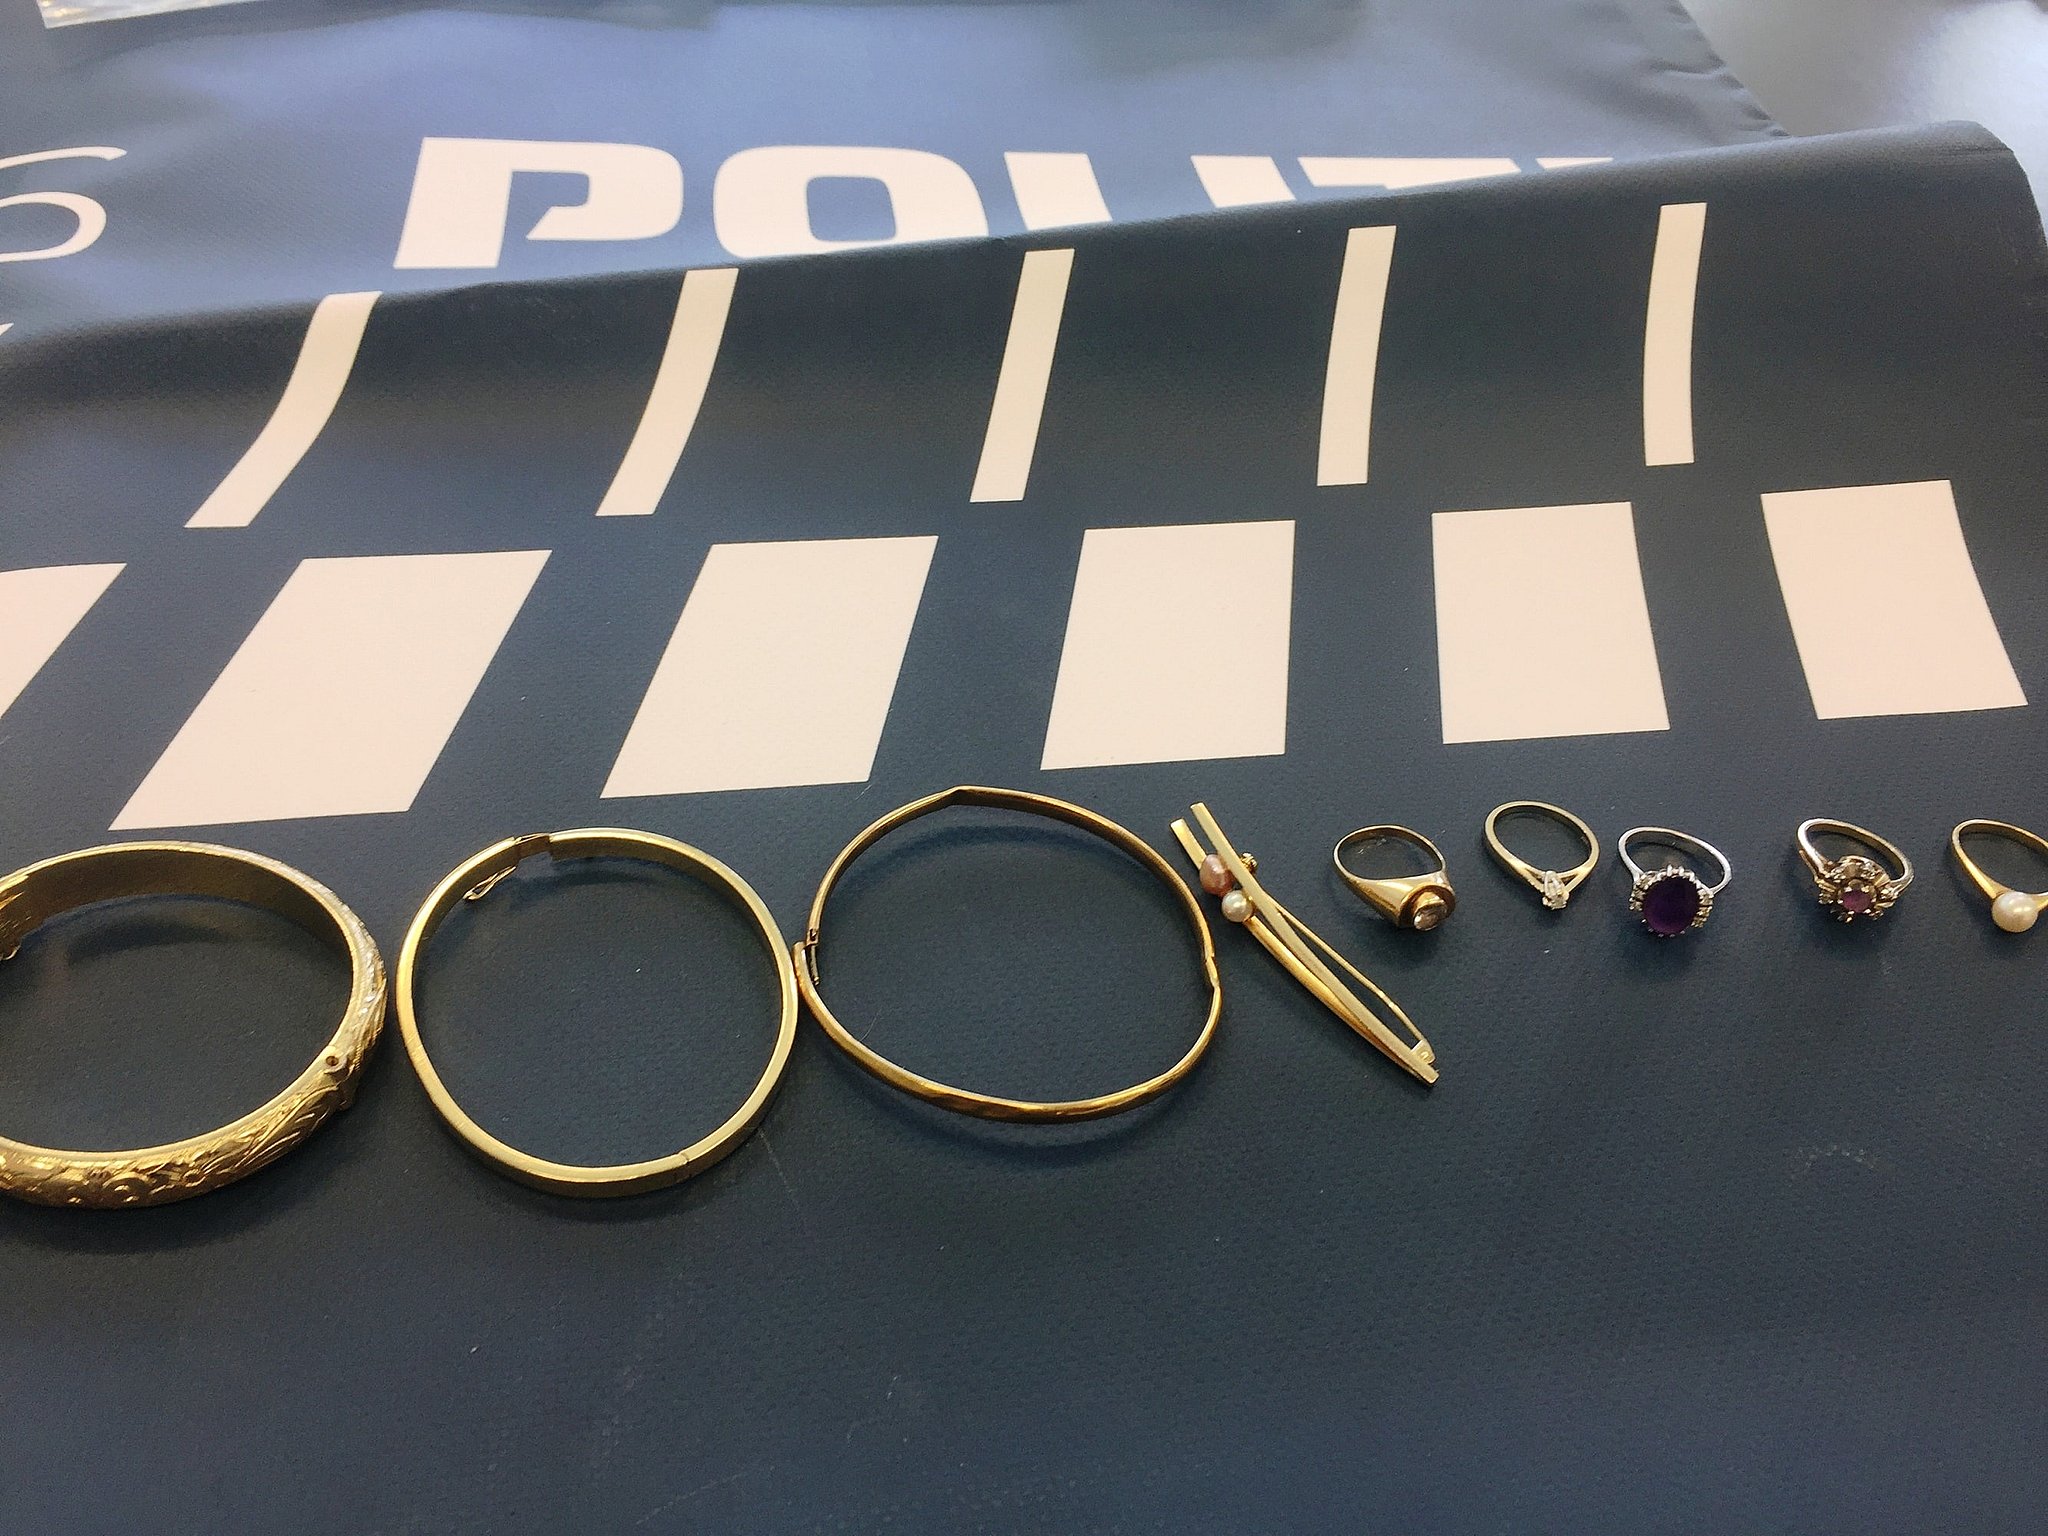 Politiet leder efter ejeren til tyvekoster: Mangler dine smykker? | TV2 ØSTJYLLAND